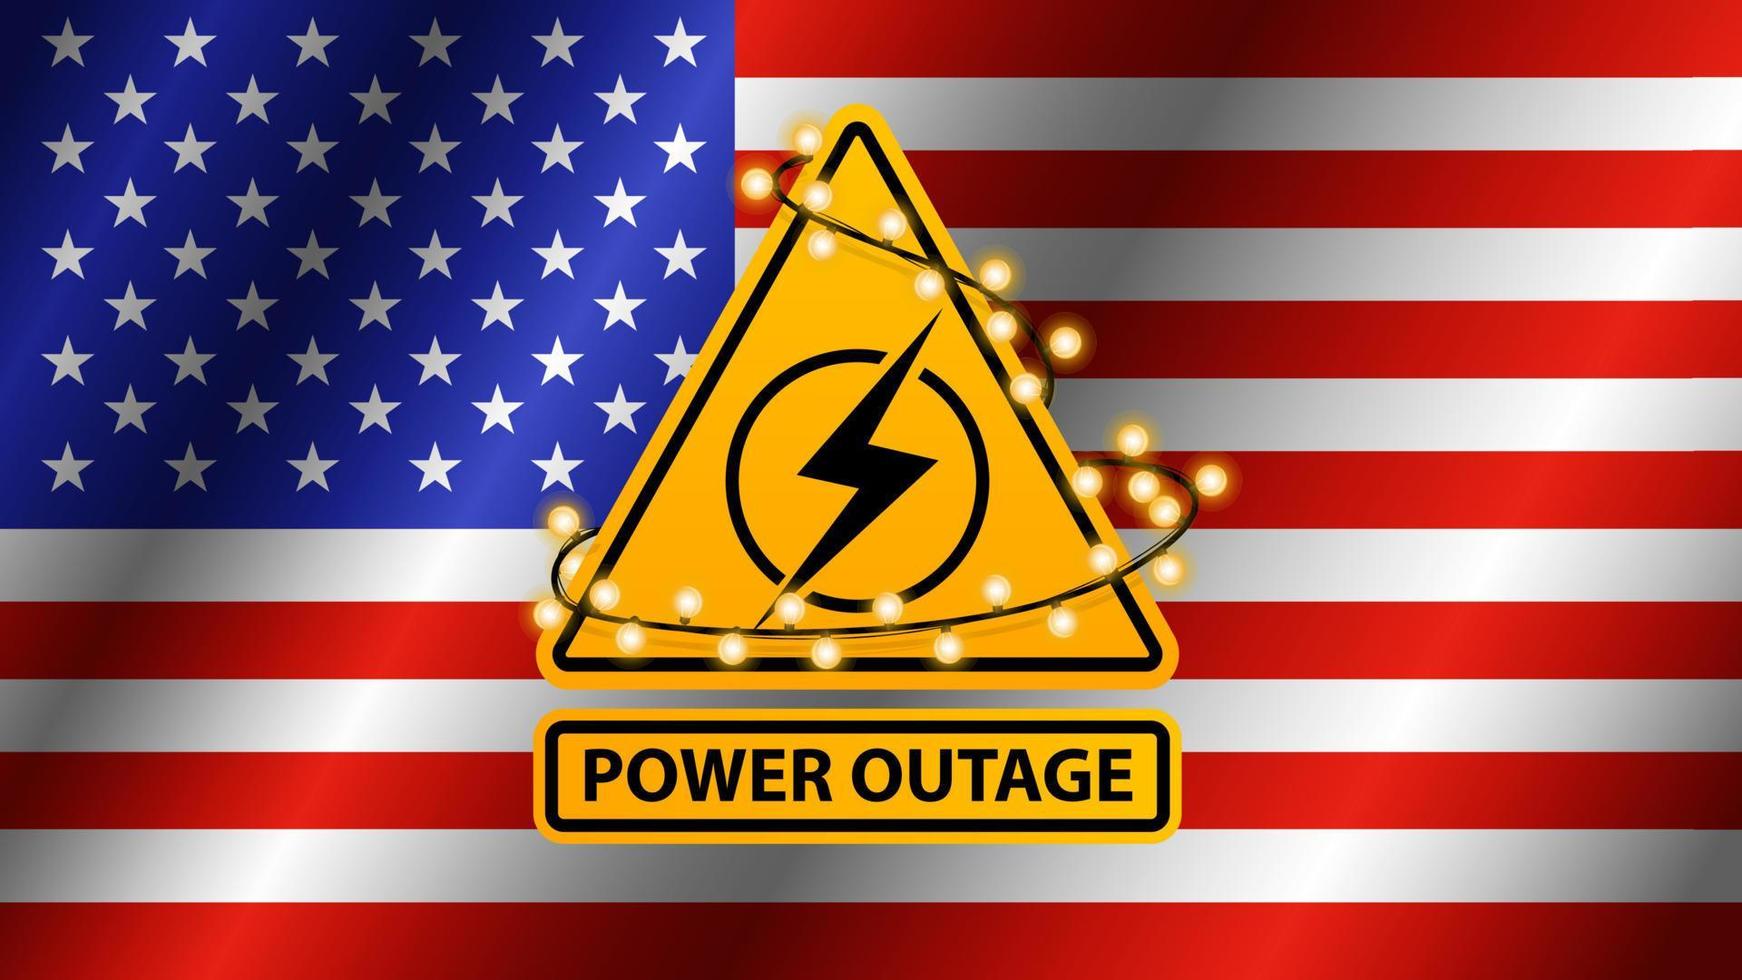 Corte de energía, señal de advertencia amarilla envuelta con guirnalda en el fondo de la bandera de EE.UU. vector